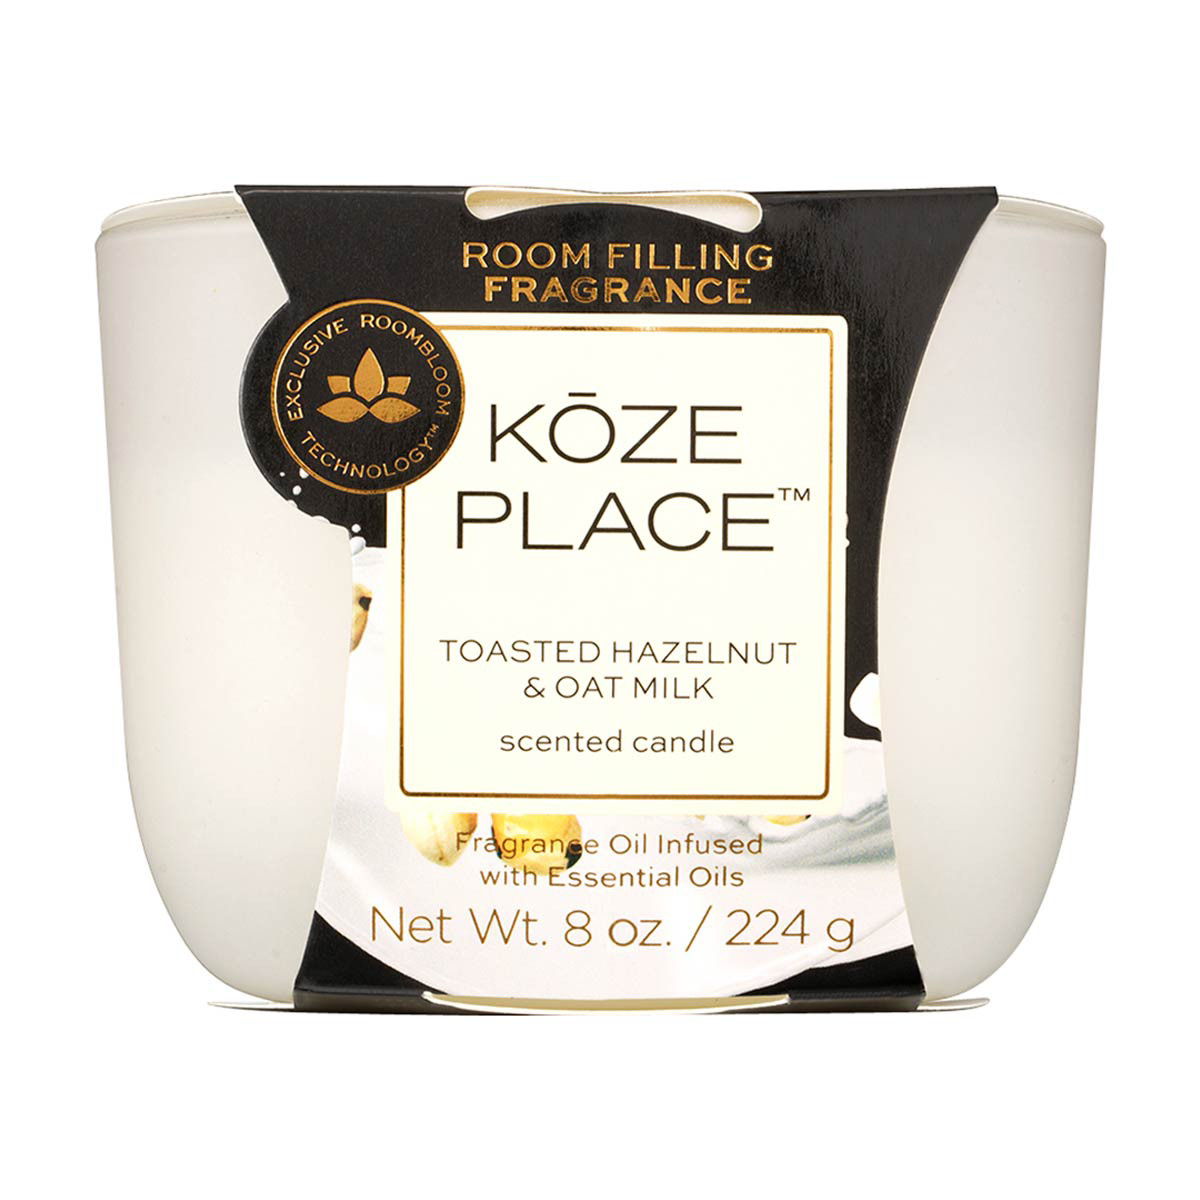 Koze Place Toasted Hazelnut and Oat Milk Scented Candle, 8 oz